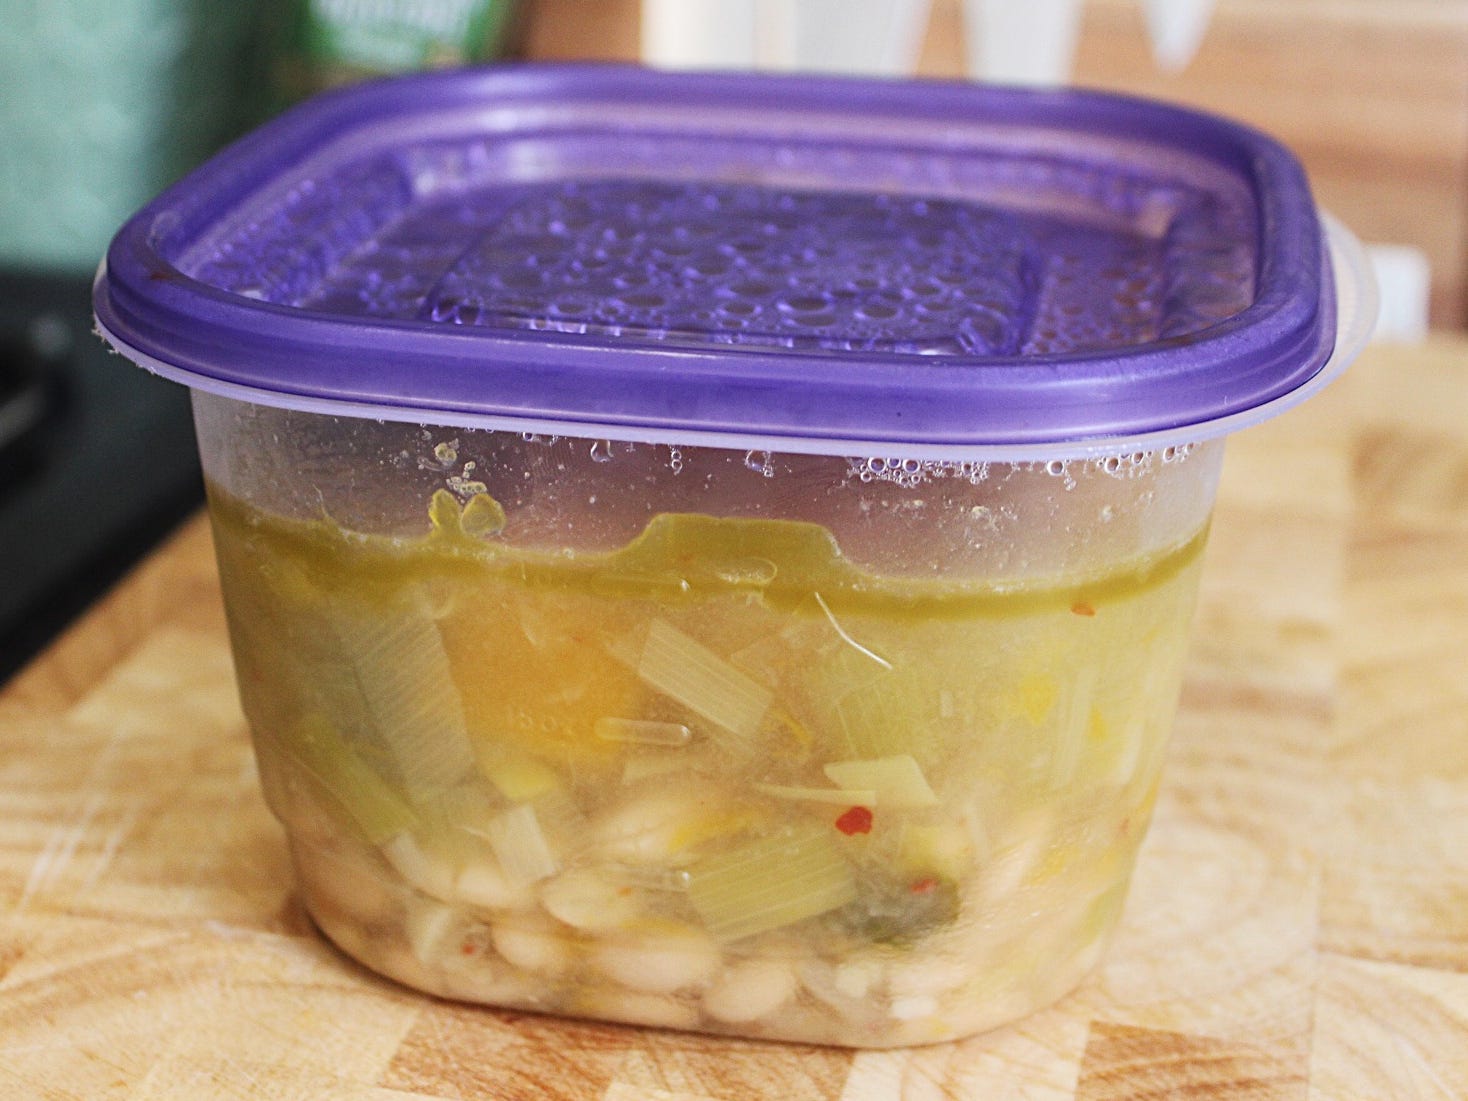 Weiße Bohnensuppe in einem Tupperware-Behälter mit violettem Deckel